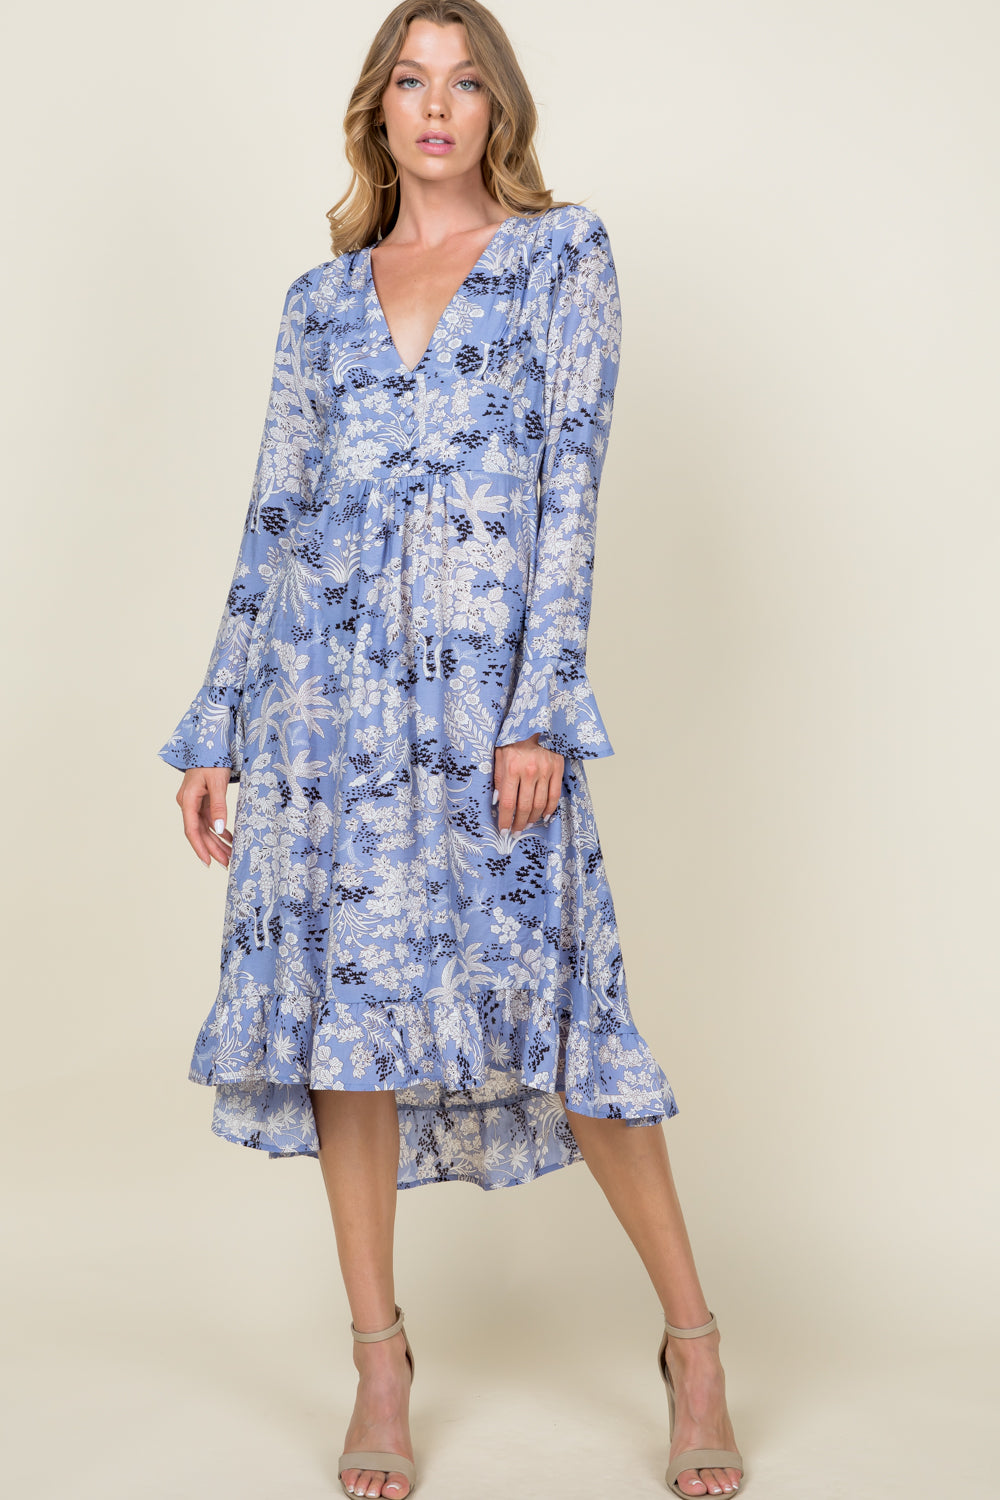 [$6/piece] Floral Ruffle Dress